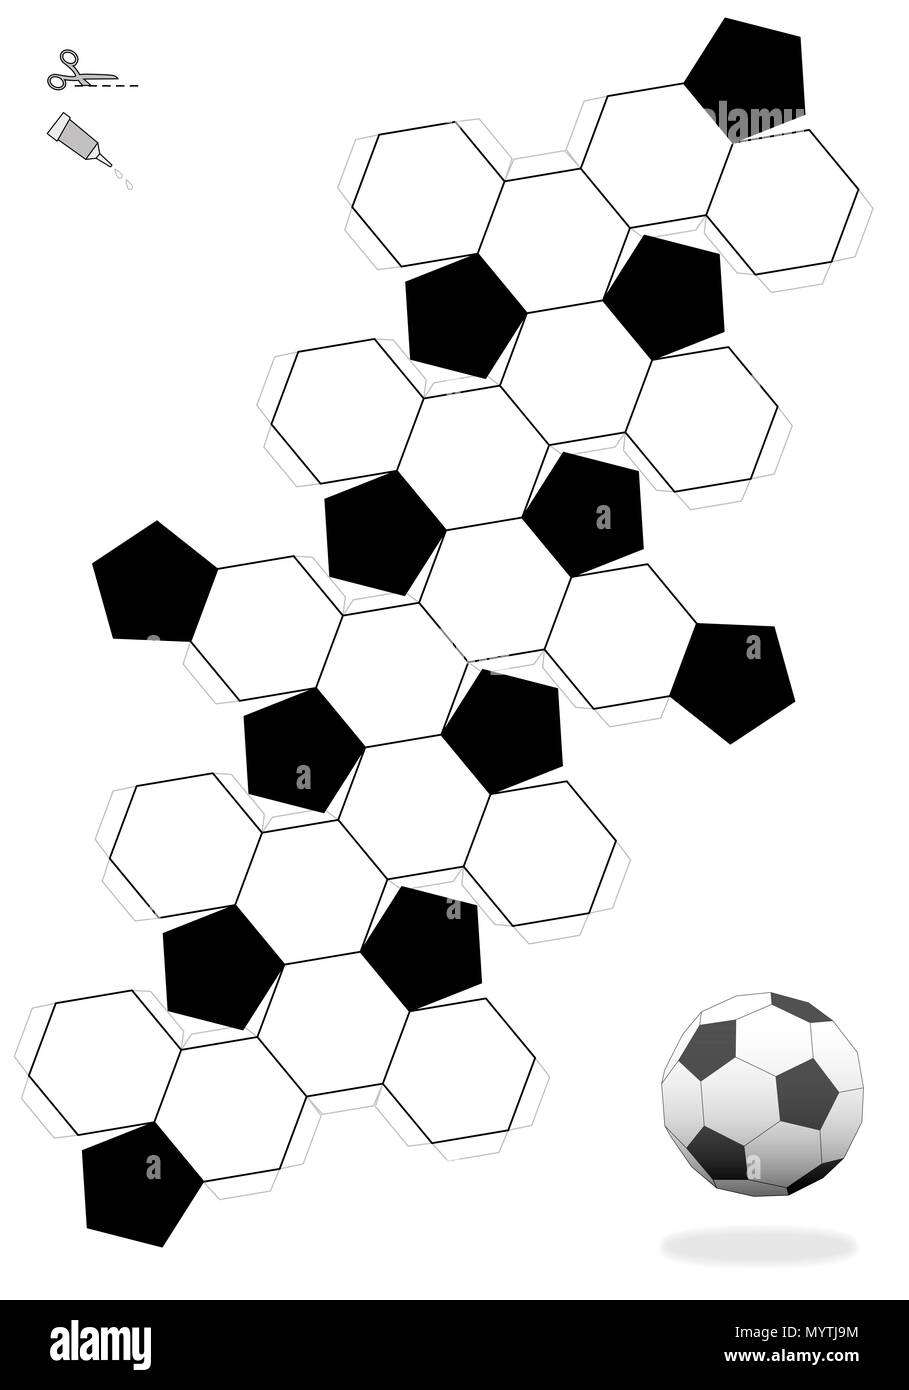 Troncato icosaedro. Pallone da calcio modello per la realizzazione di un oggetto 3d al di fuori della rete con dodici black pentagonale e venti bianco facce esagonali. Foto Stock